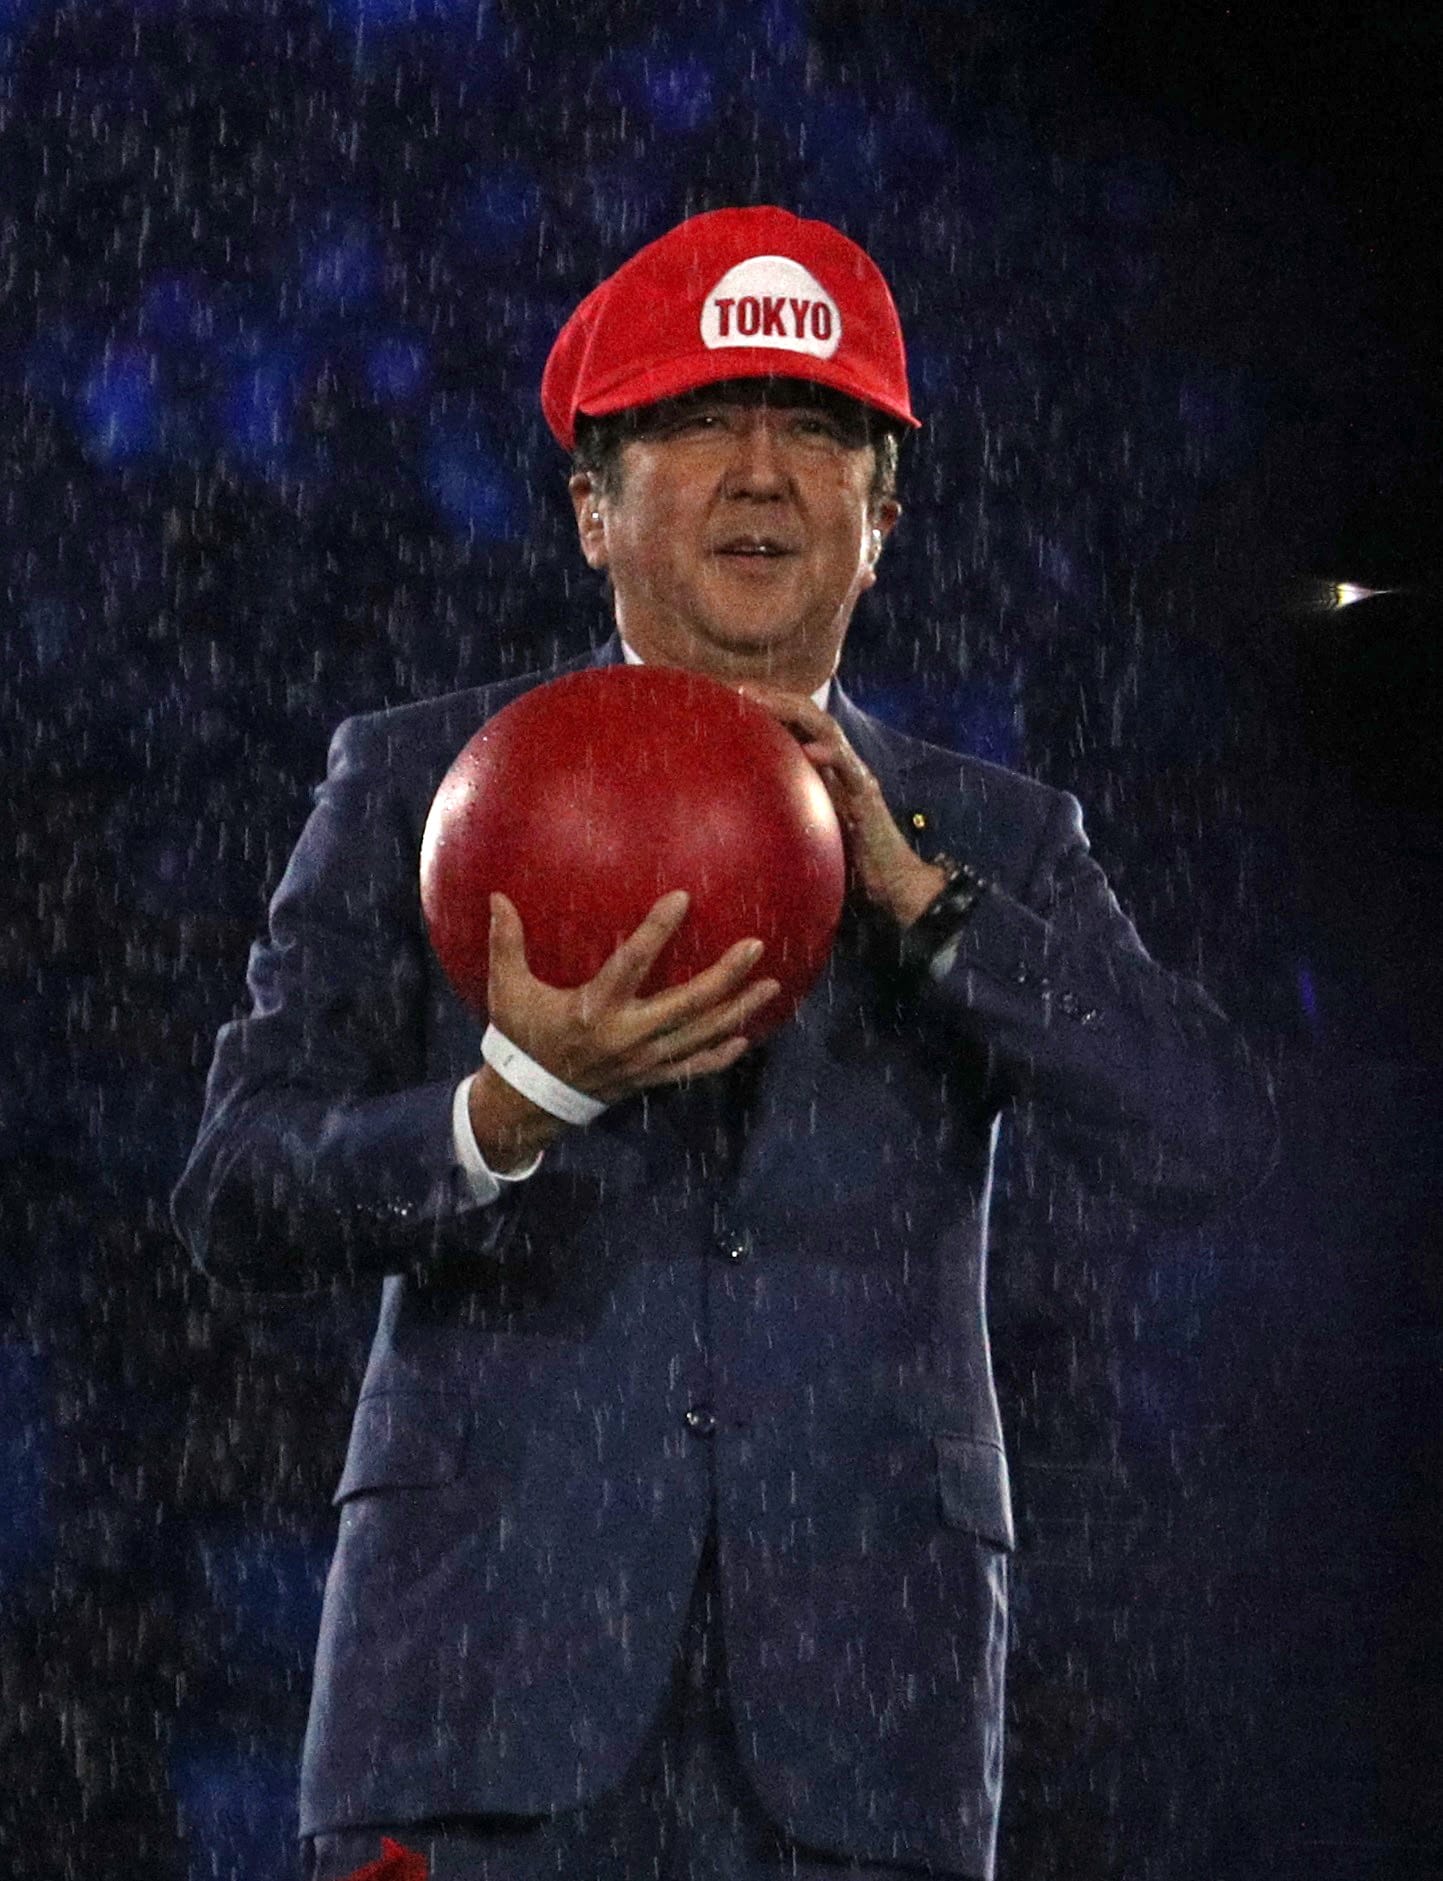 Vorgeschmack auf Olympia 2020 in Tokio: Japans Premierminister zeigte sich im Kostüm von "Super Mario".